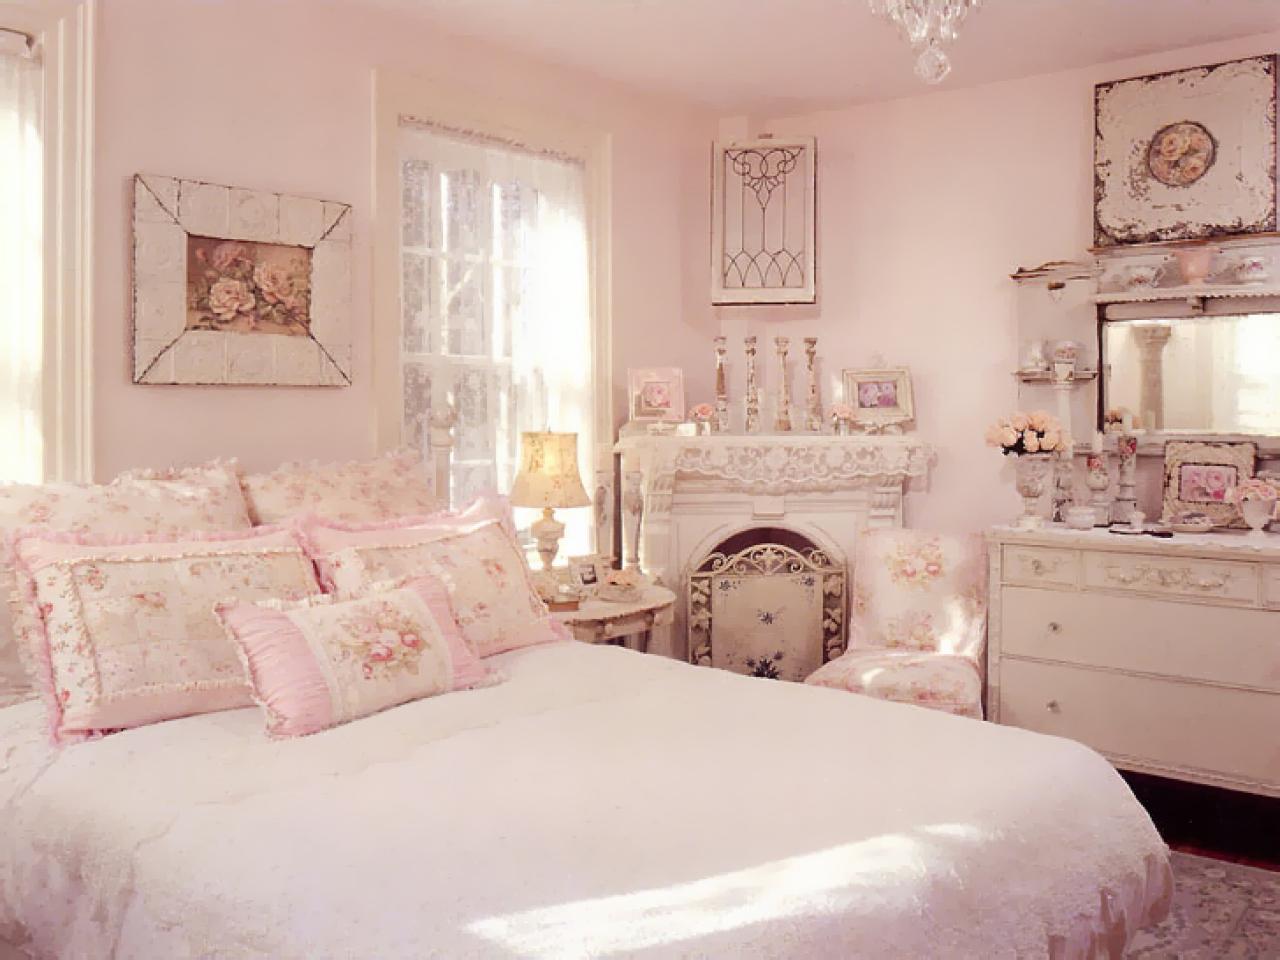 ... to Your Bedroom Design | Bedrooms & Bedroom Decorating Ideas | HGTV